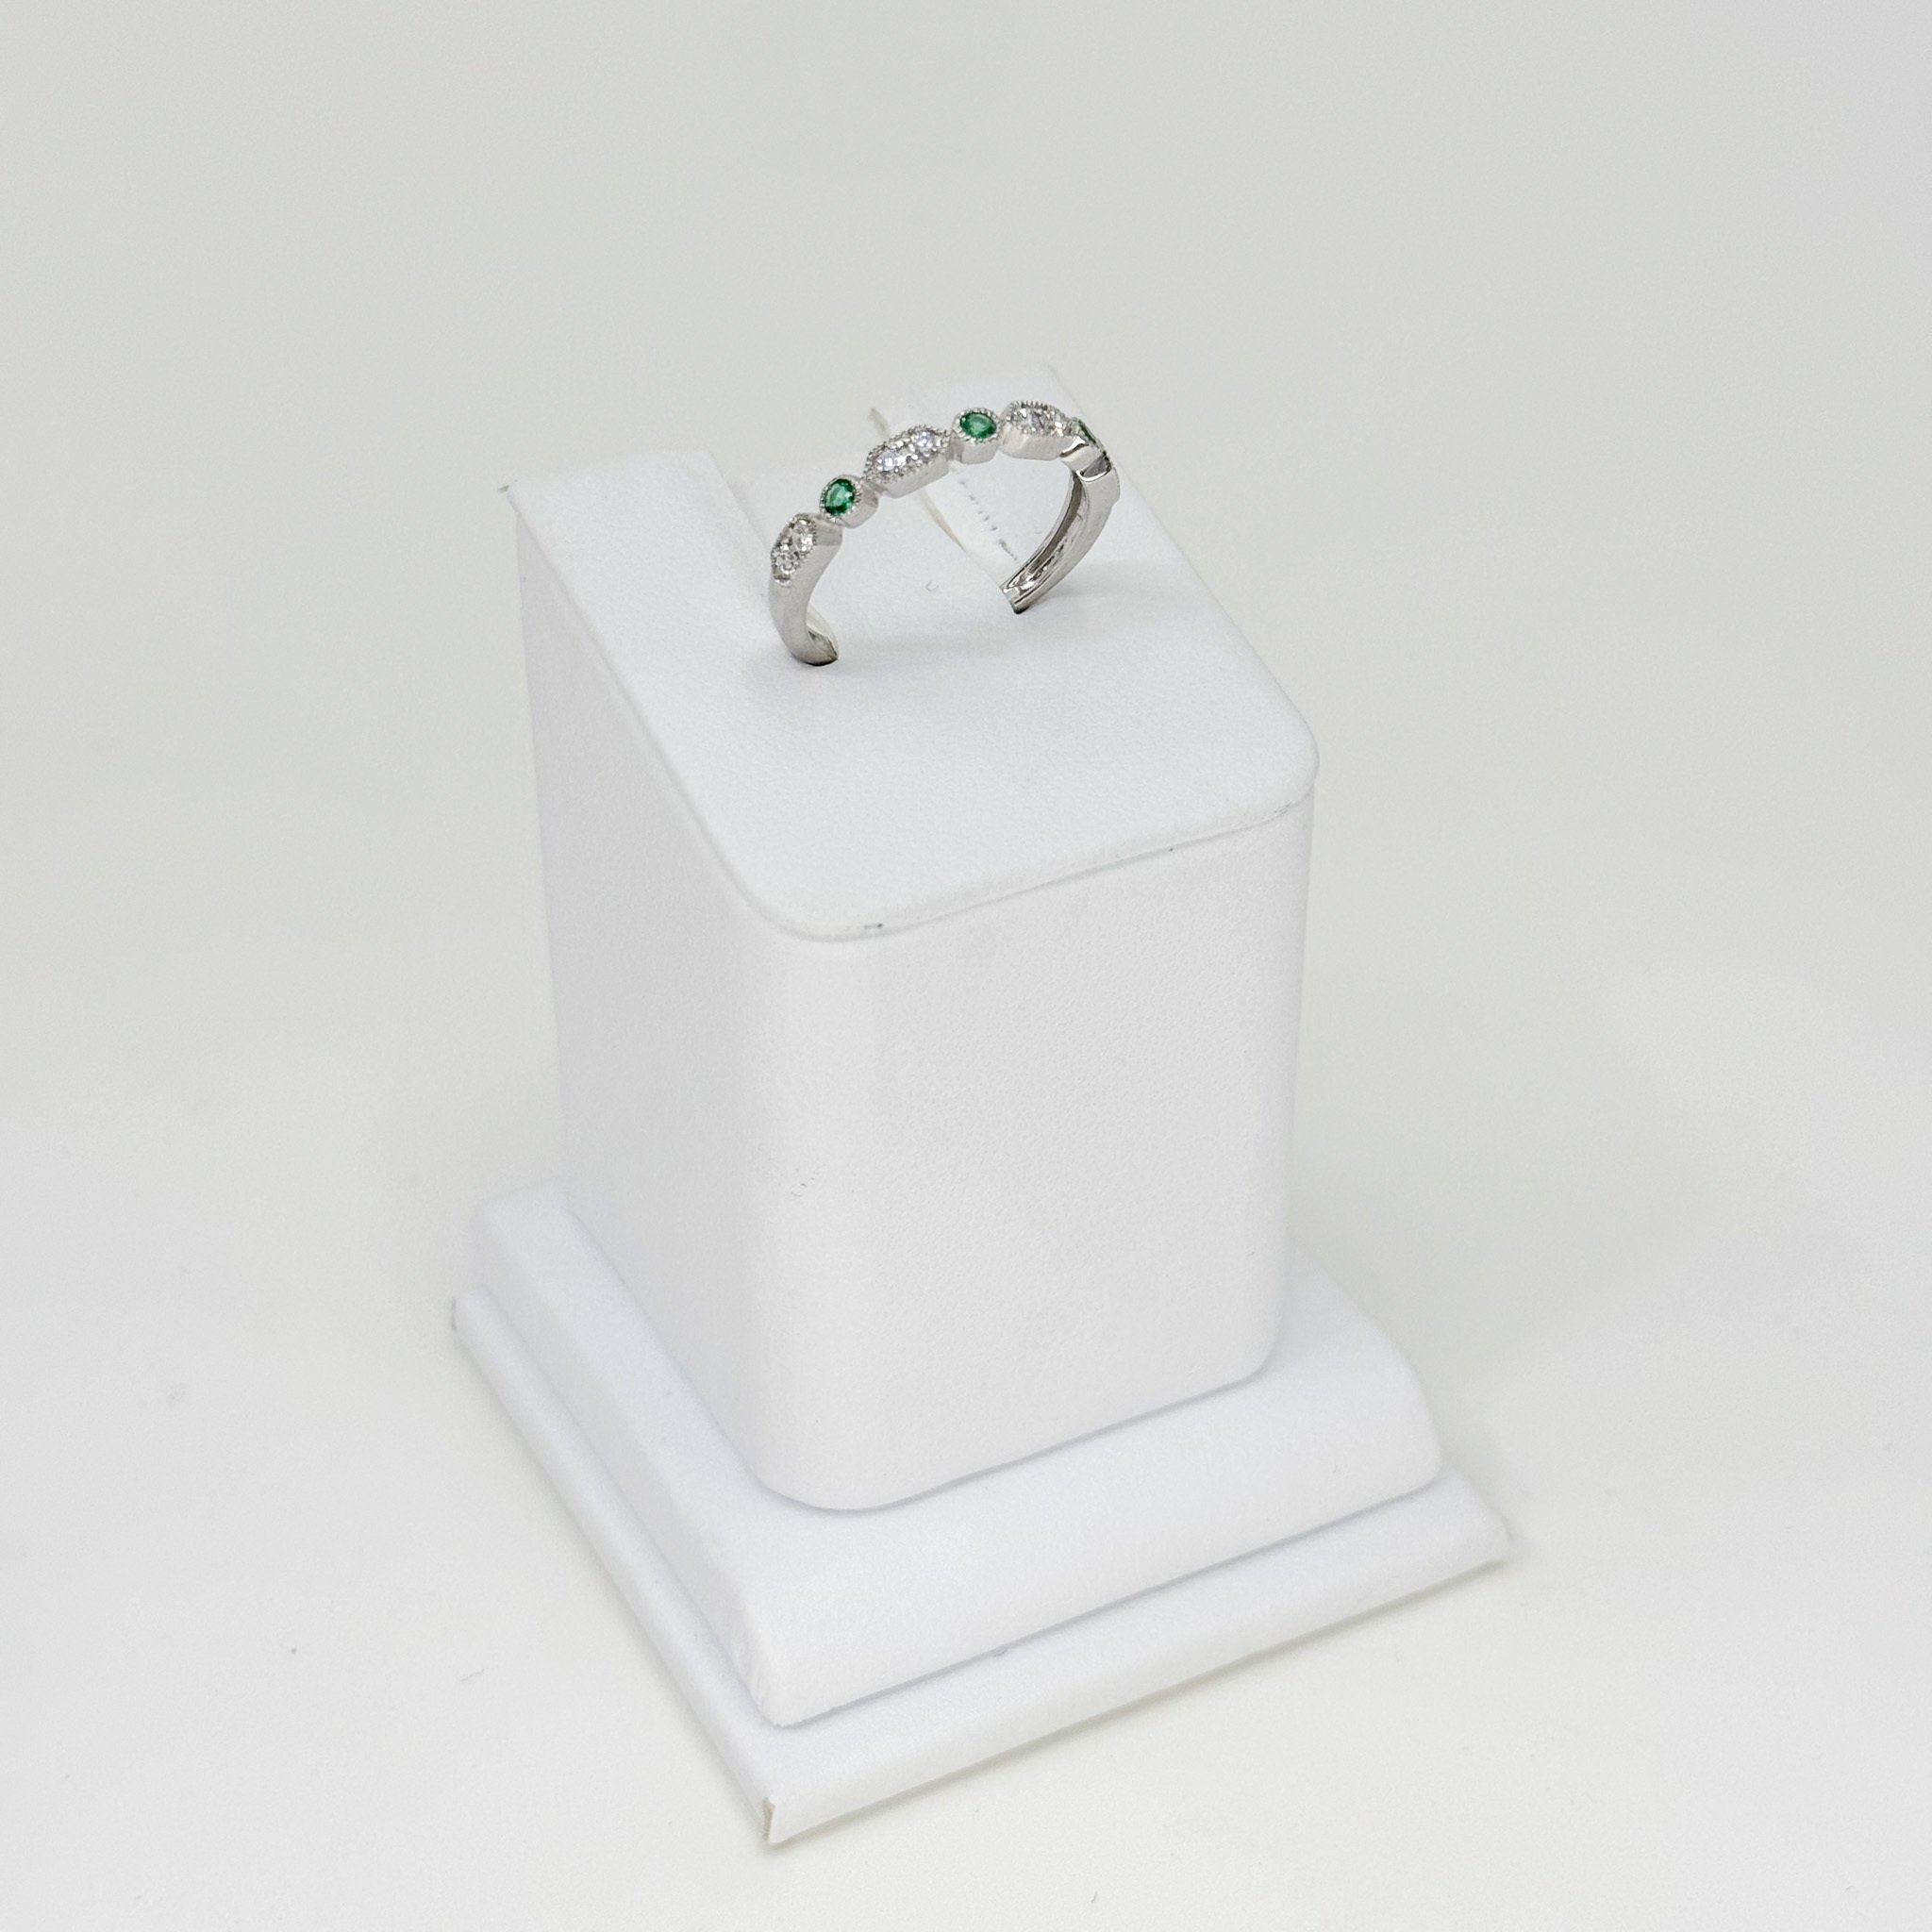 Emerald and Diamond Band, 3 emeralds 0.11ct, 8 round diamonds 0.18ct, 14kw